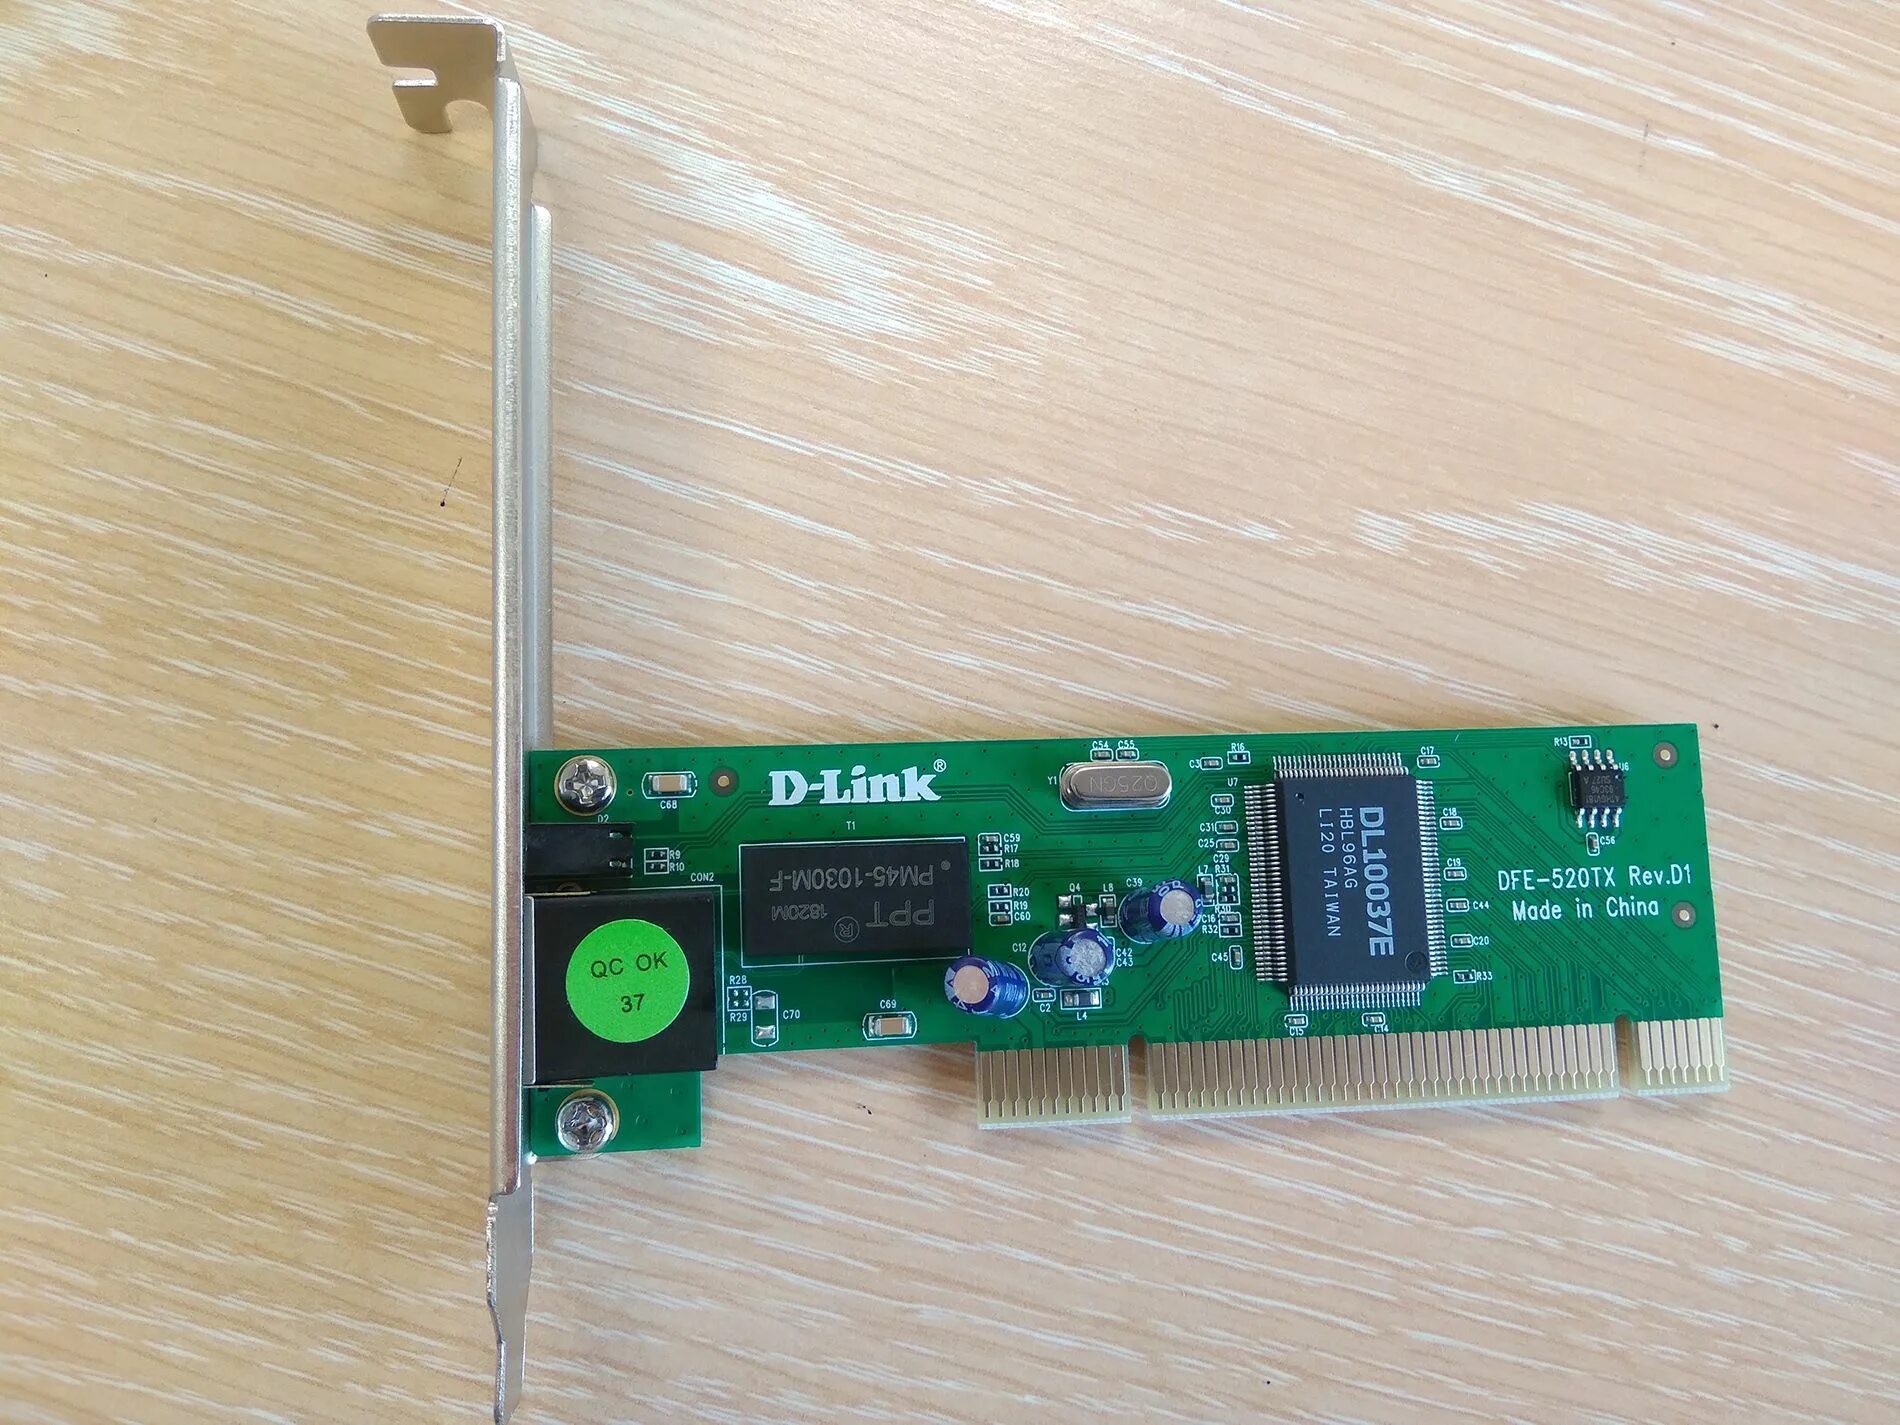 D-link DFE-520tx PCI. D-link DFE-520tx/d1a. D-link DFE-520tx Rev.d1. Сетевая карта d-link DFE-520tx.